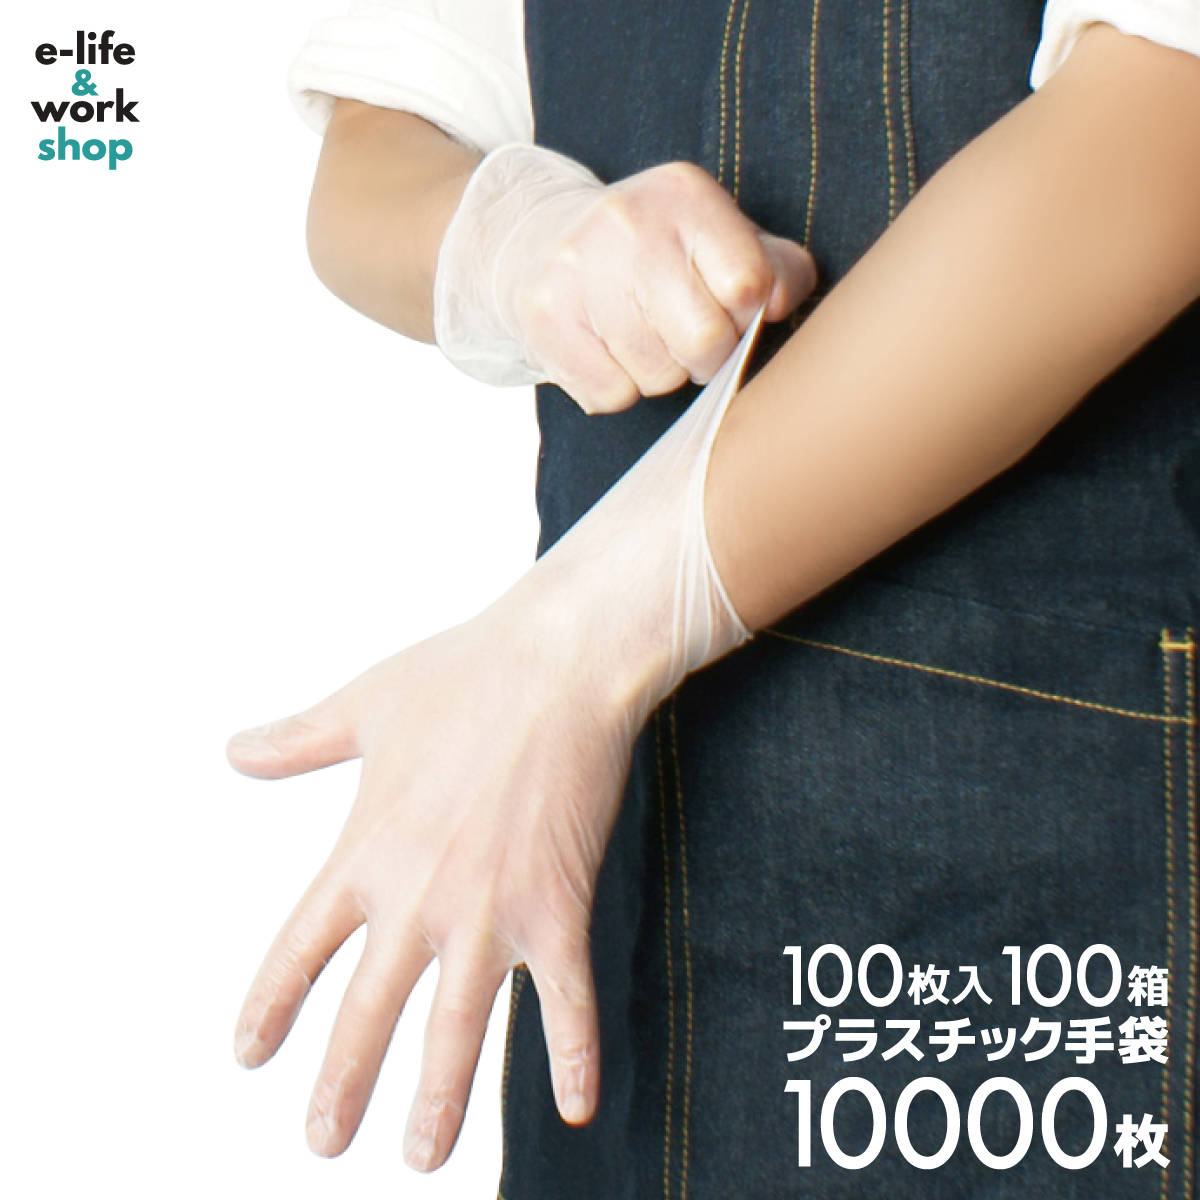 【楽天市場】プラスチック手袋 プラスチックグローブ 100枚入り 1